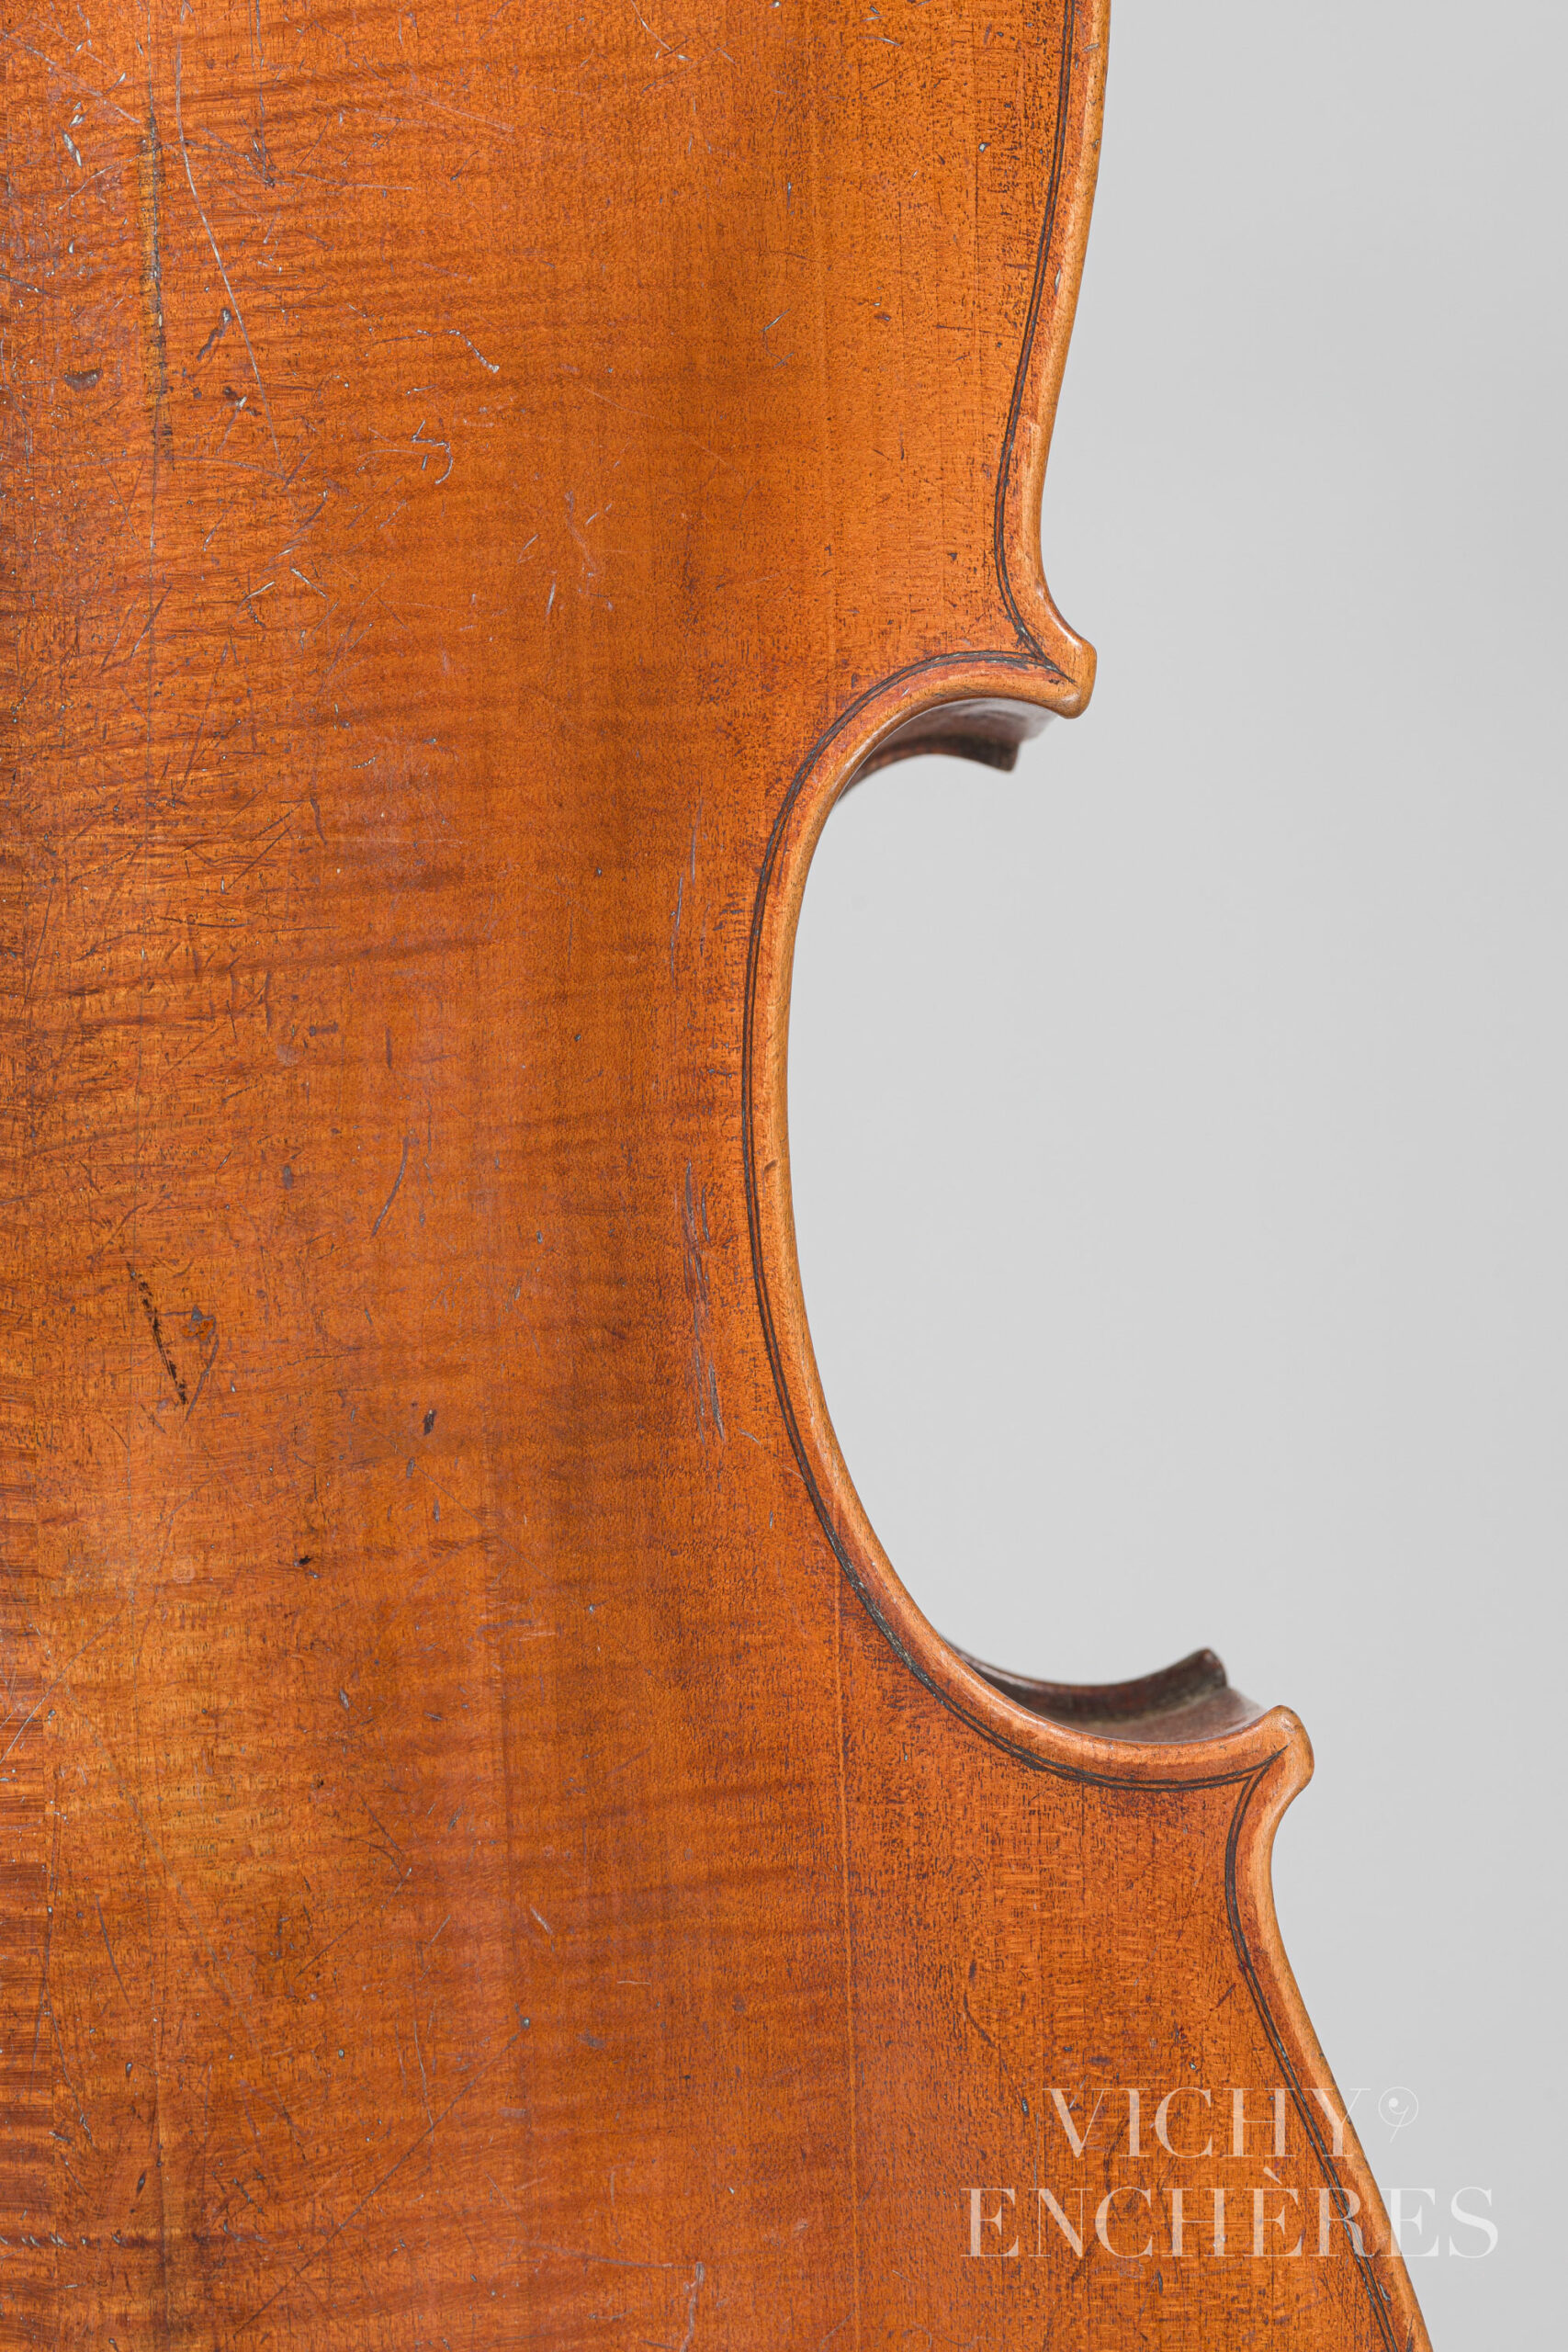 Violoncelle 3/4 d'Ambroise DECOMBLE Instrument mis en vente par Vichy Enchères le 1er décembre 2022 © Christophe Darbelet